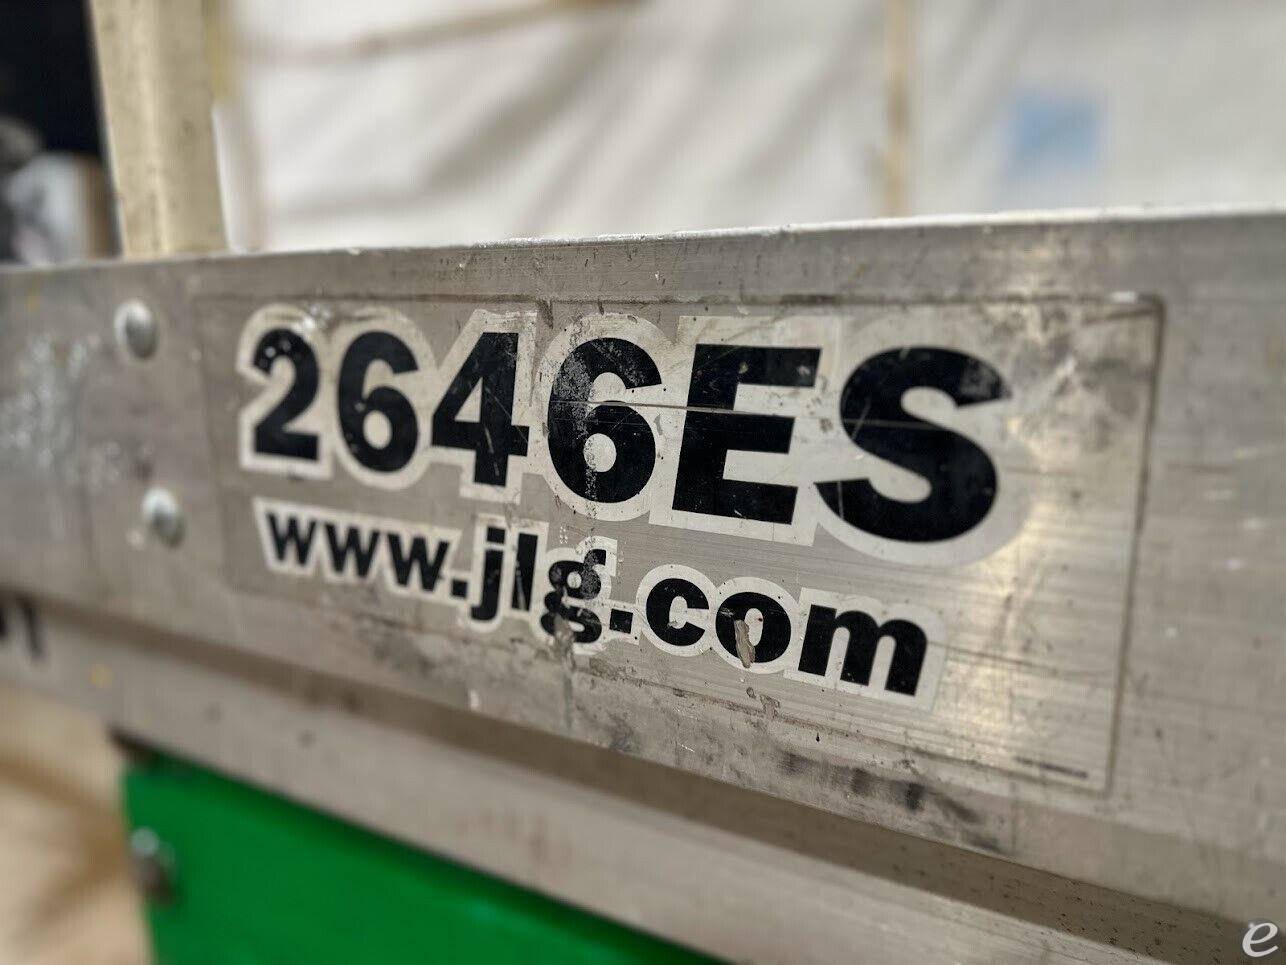 2014 JLG 2646ES